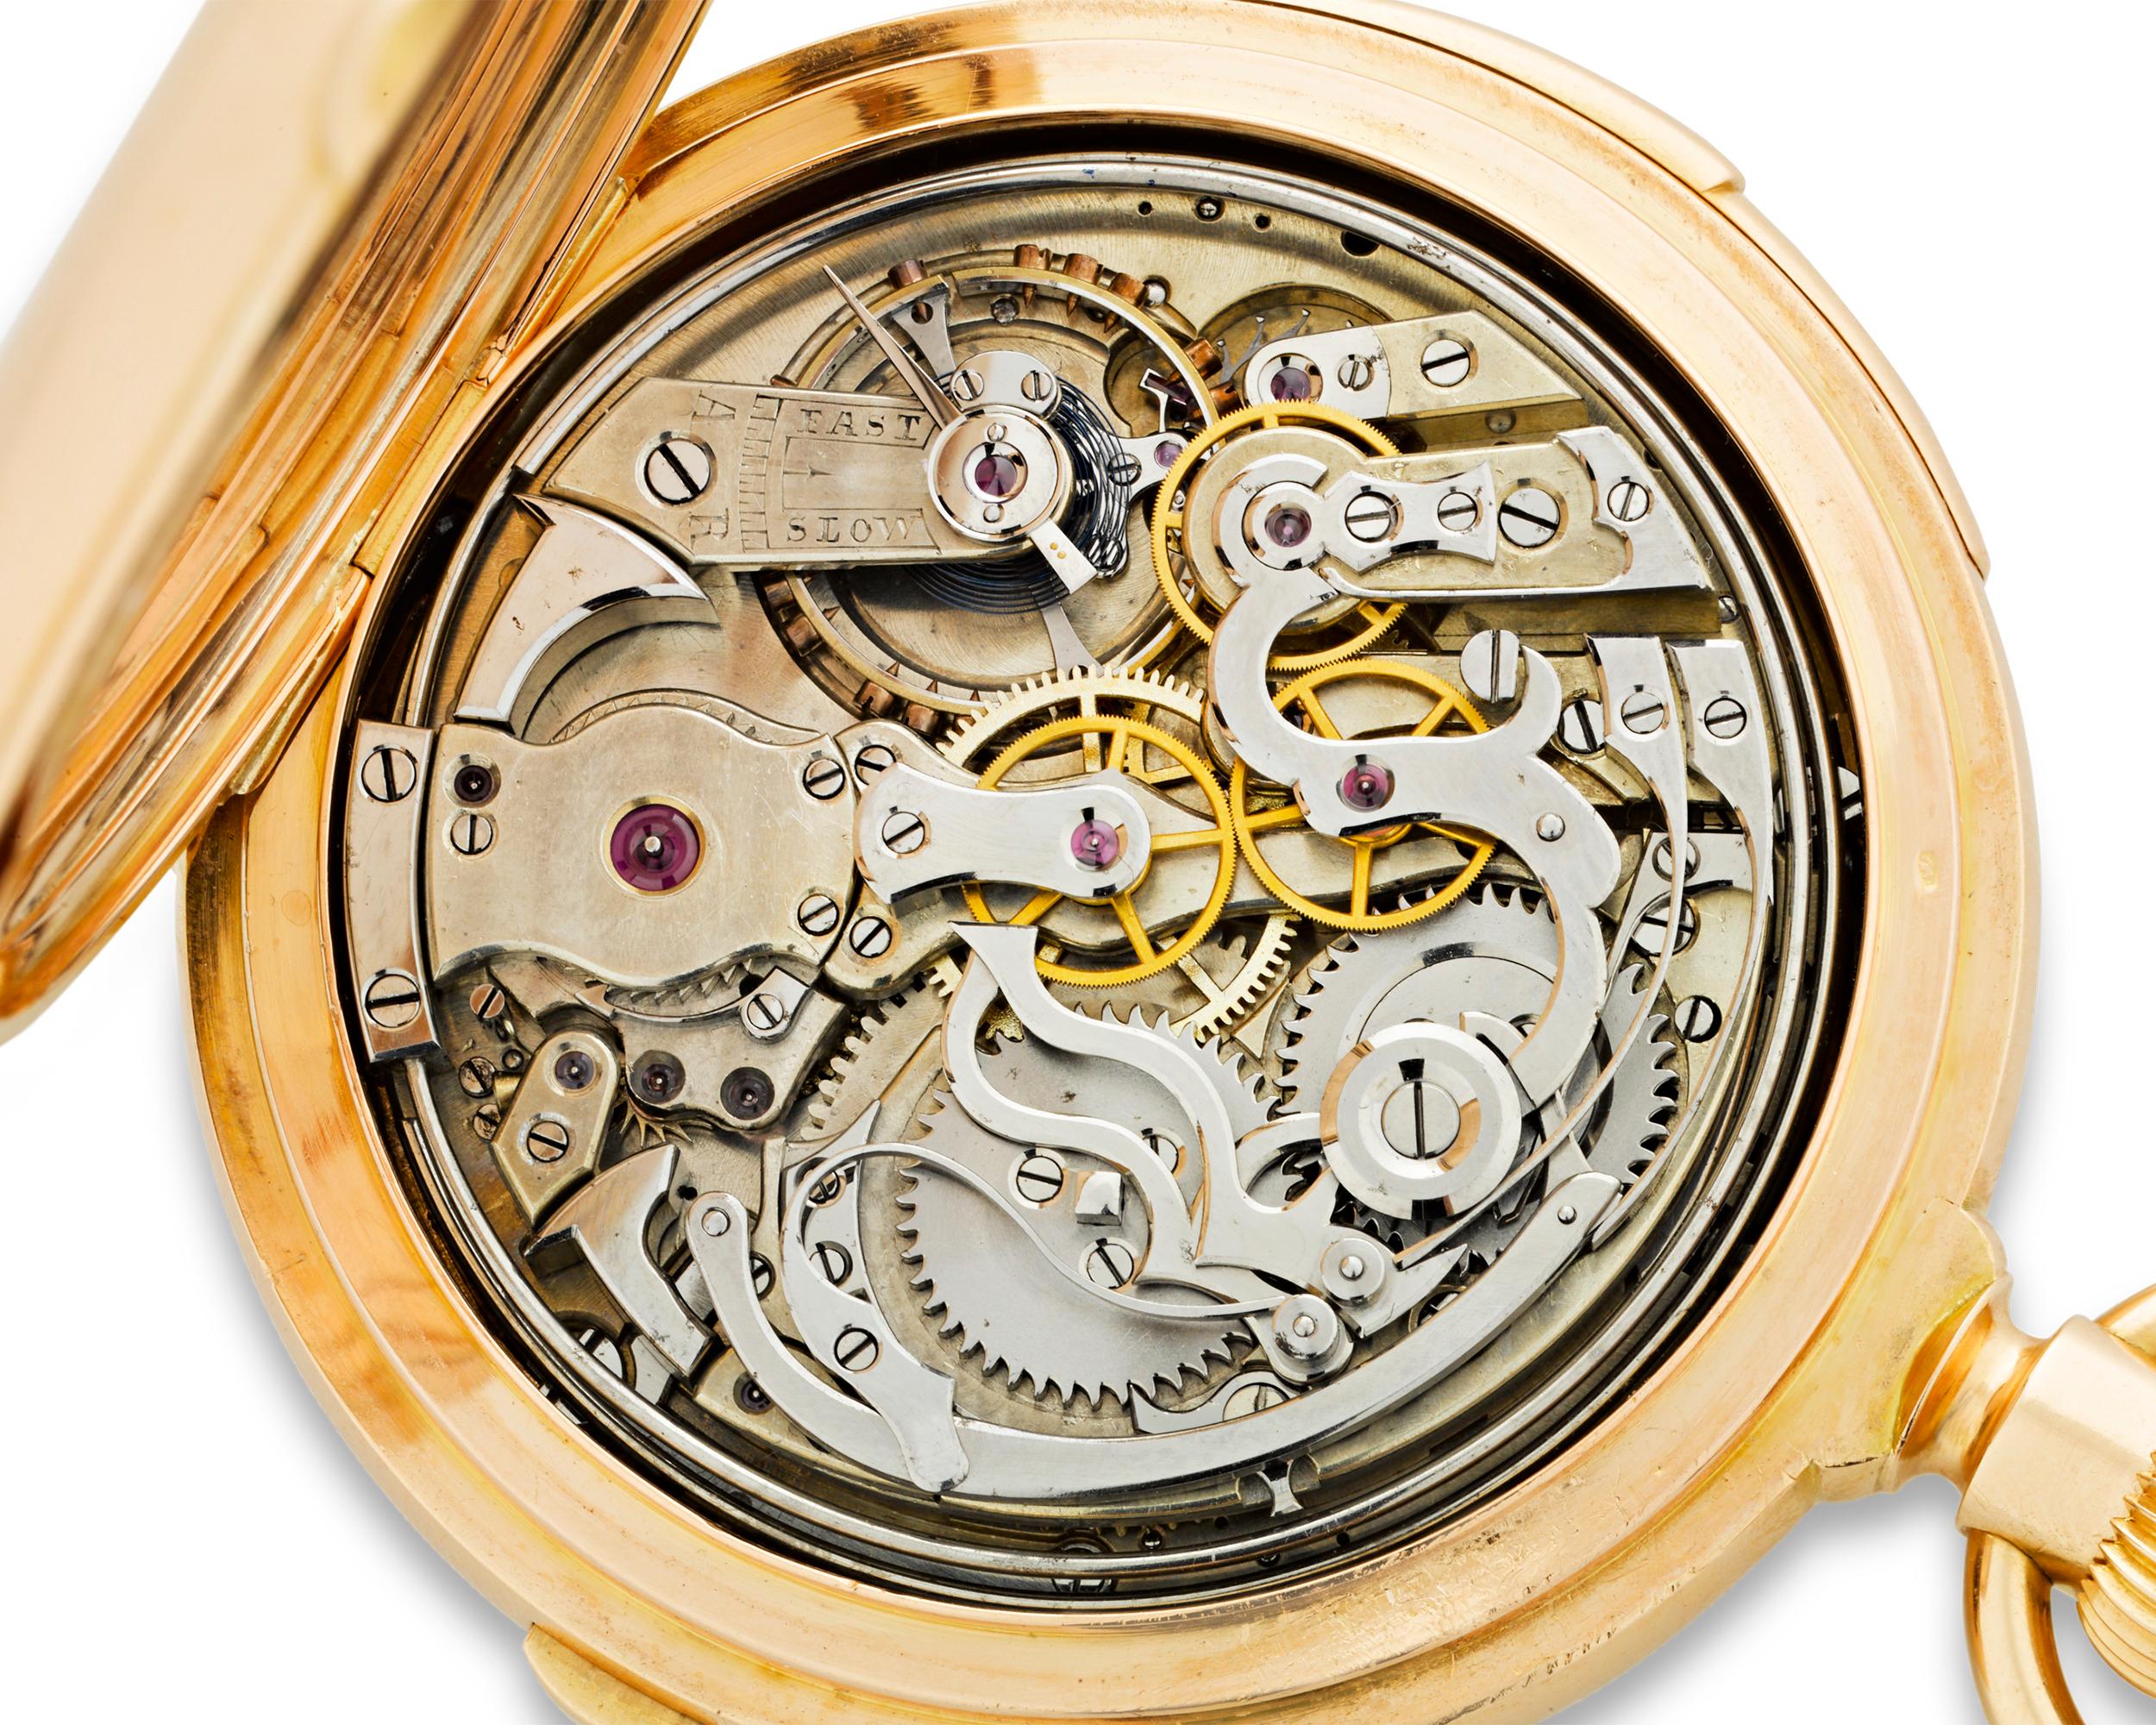 Diese stilvolle und komplexe Chronometer-Taschenuhr mit ewigem Kalender und Minutenrepetition wurde von der Schweizer Firma H. Redard & Co. geschaffen. Das Gehäuse aus 18-karätigem Roségold trägt das Monogramm des ursprünglichen Besitzers in